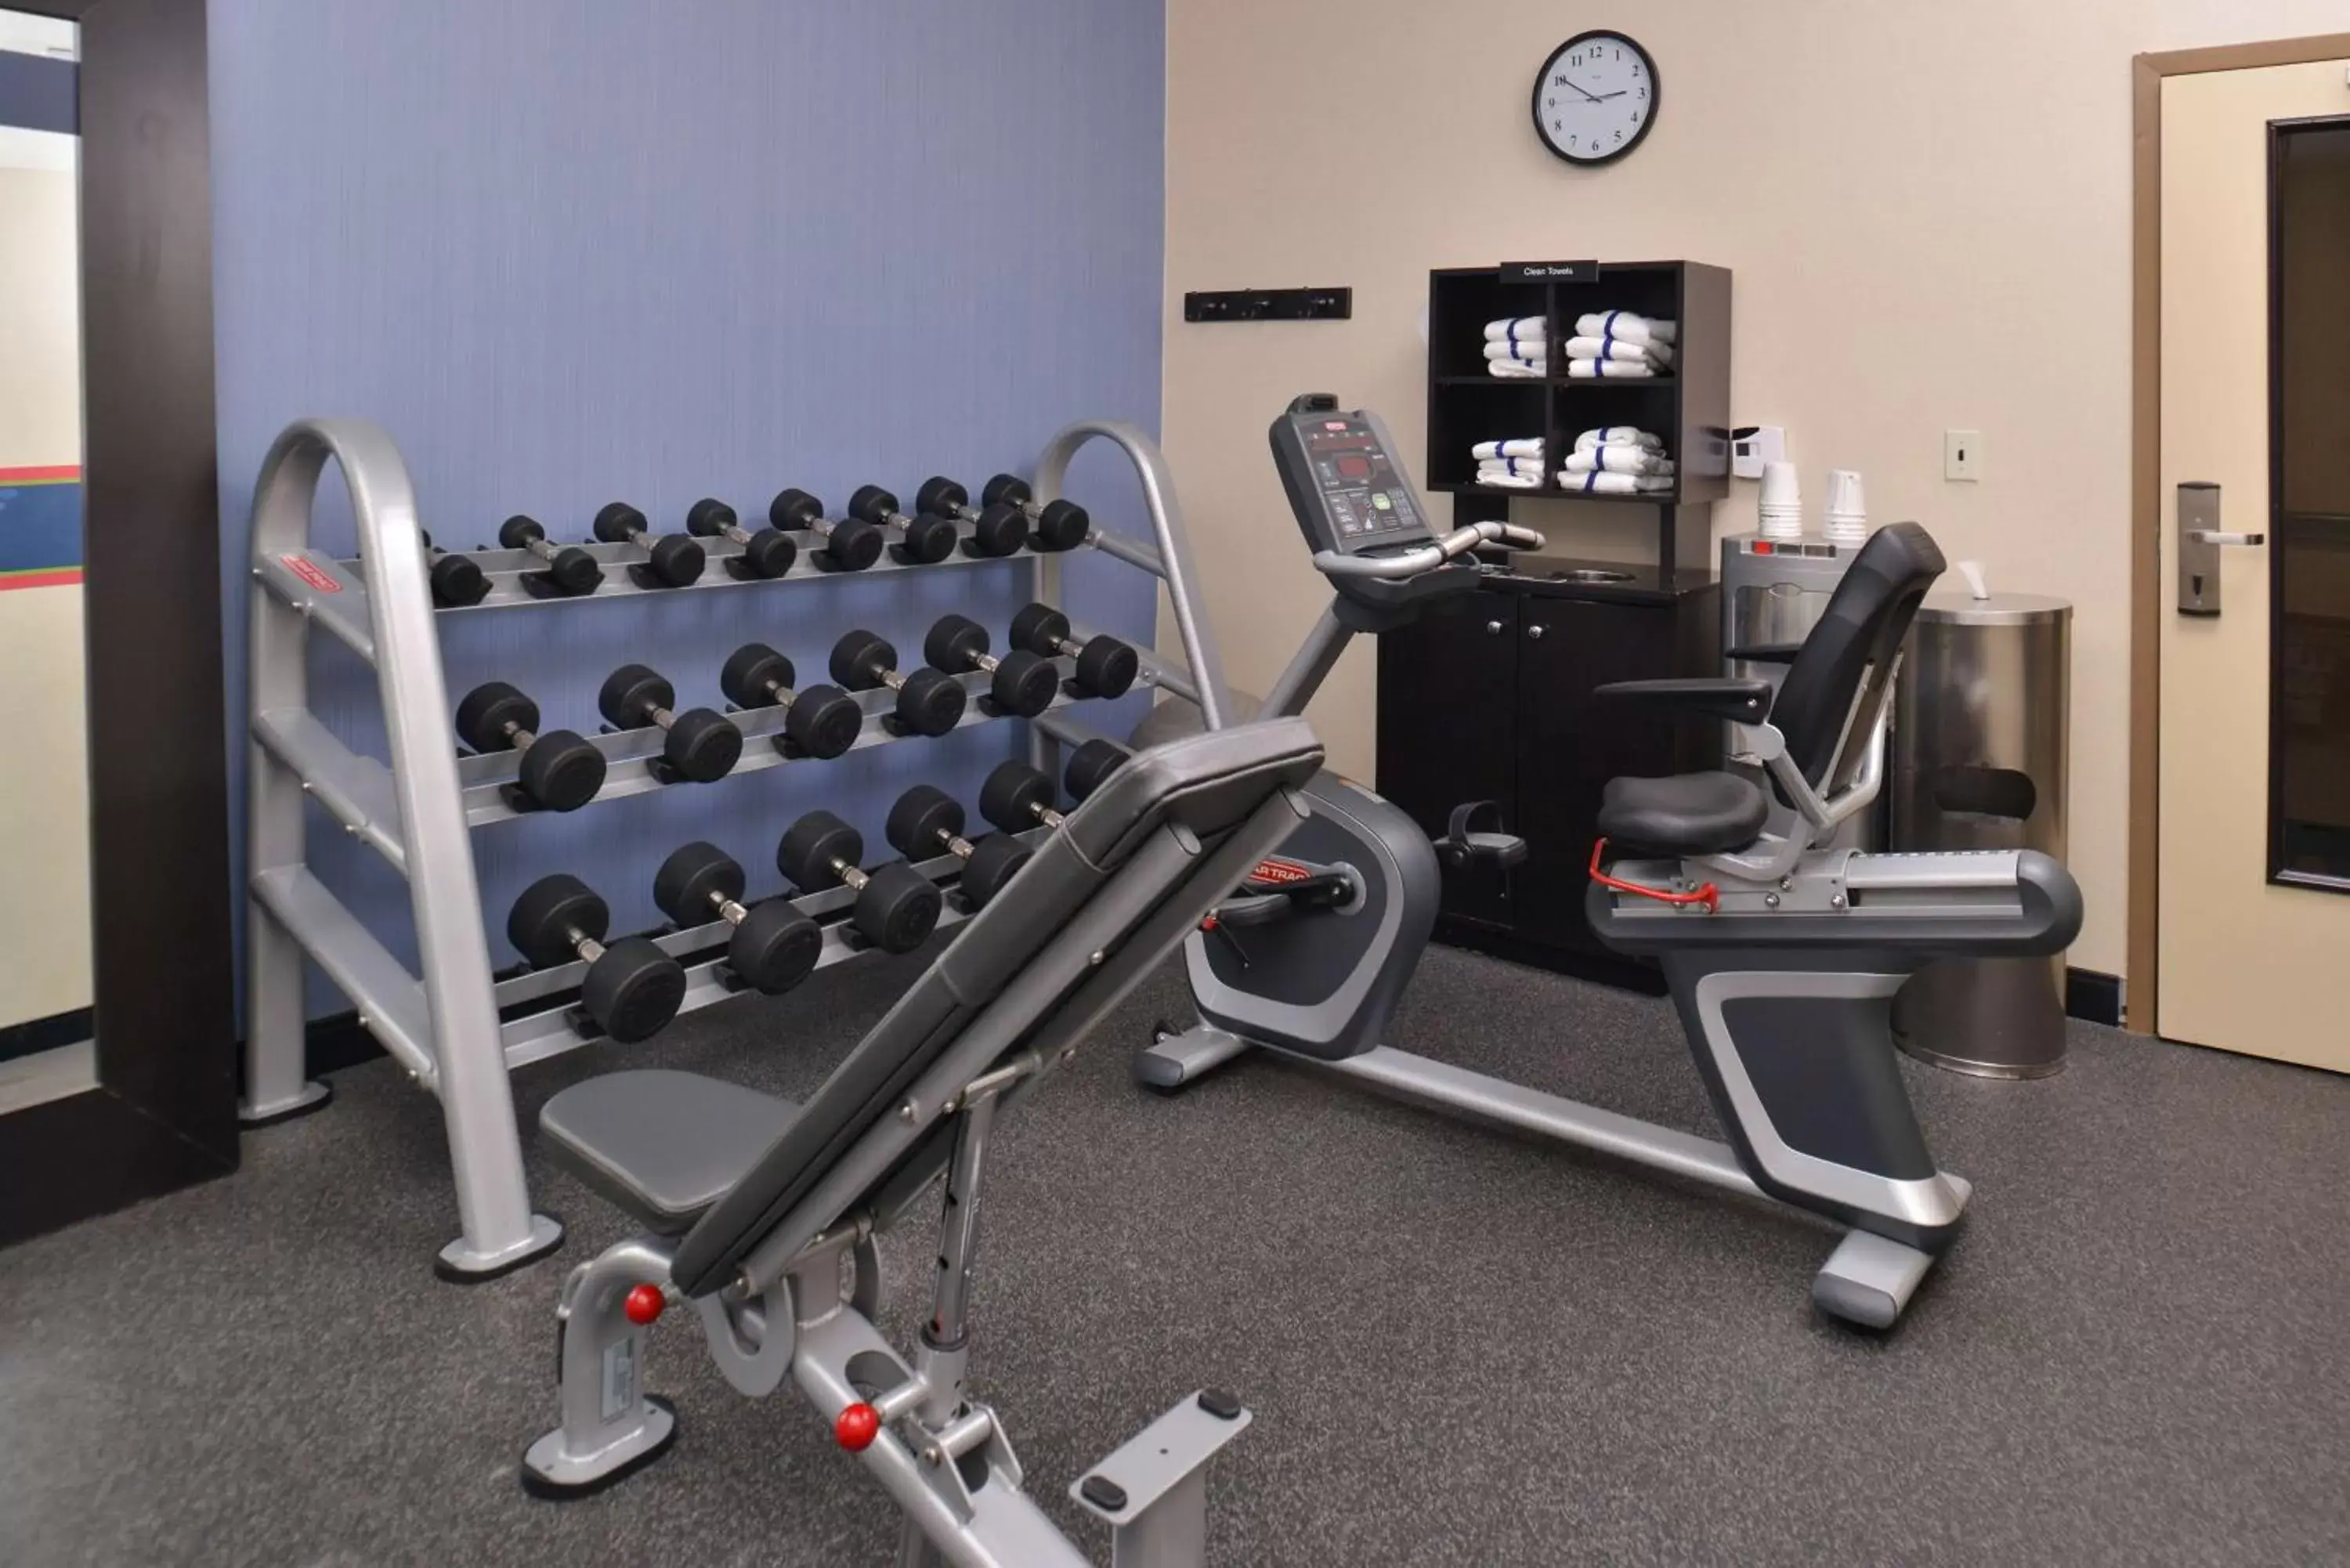 Fitness centre/facilities, Fitness Center/Facilities in Hampton Inn Van Horn